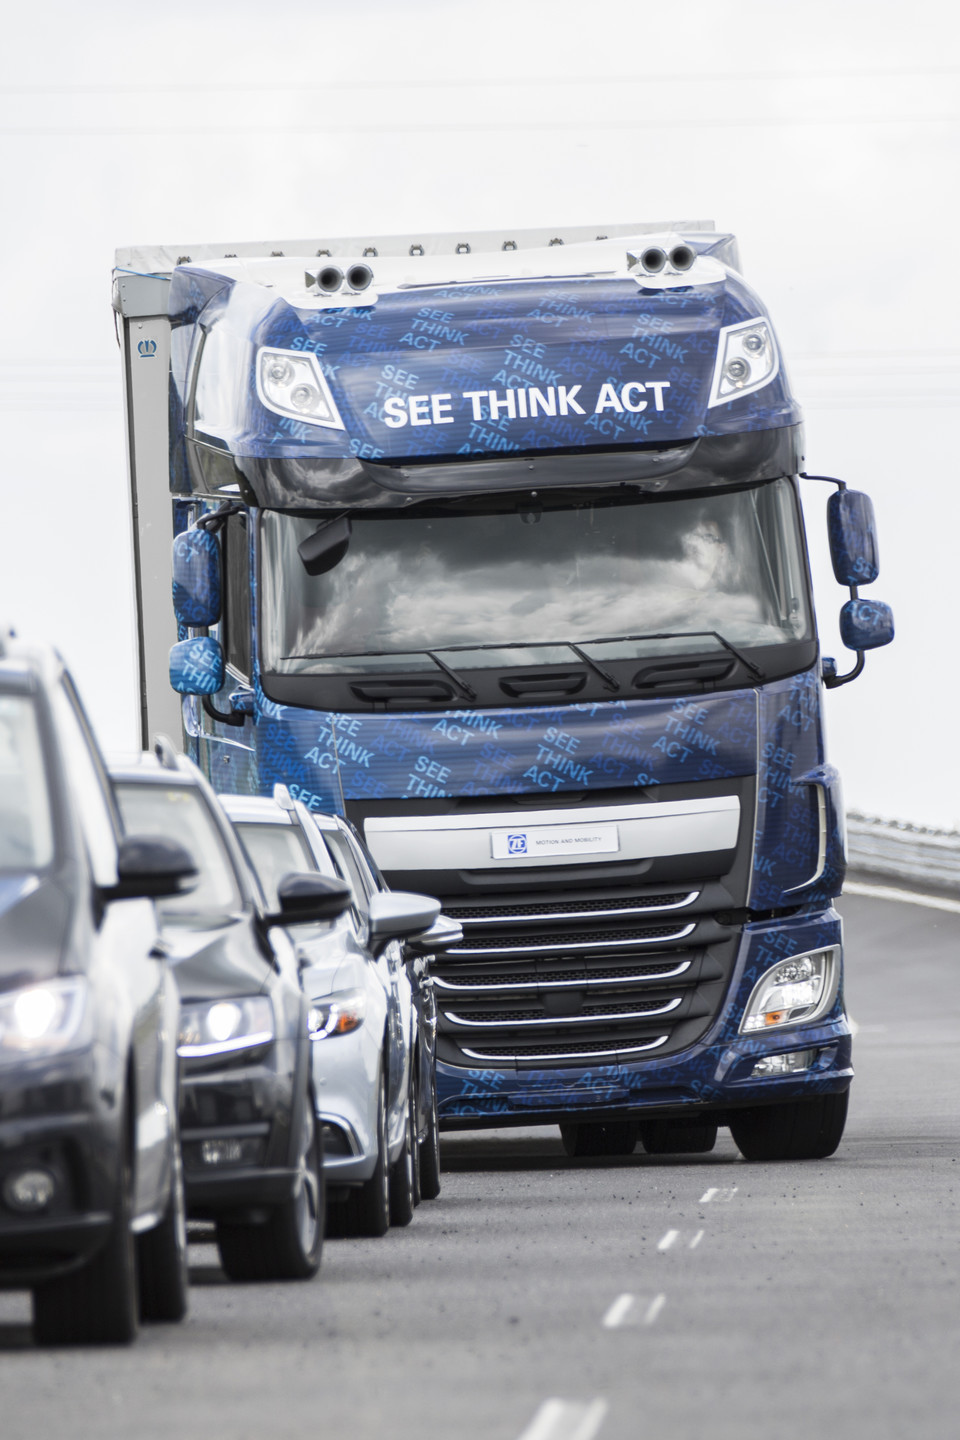 A ZF Innovation Truck 2016 elnevezésű járműve intelligens érzékelőrendszerei együttműkődésének köszönhetően számos baleset-elhárító funkcióval rendelkezik, továbbá a beparkolást is képes önállóan és környezetkímélő módon végrehajtani (fotó: IAA)